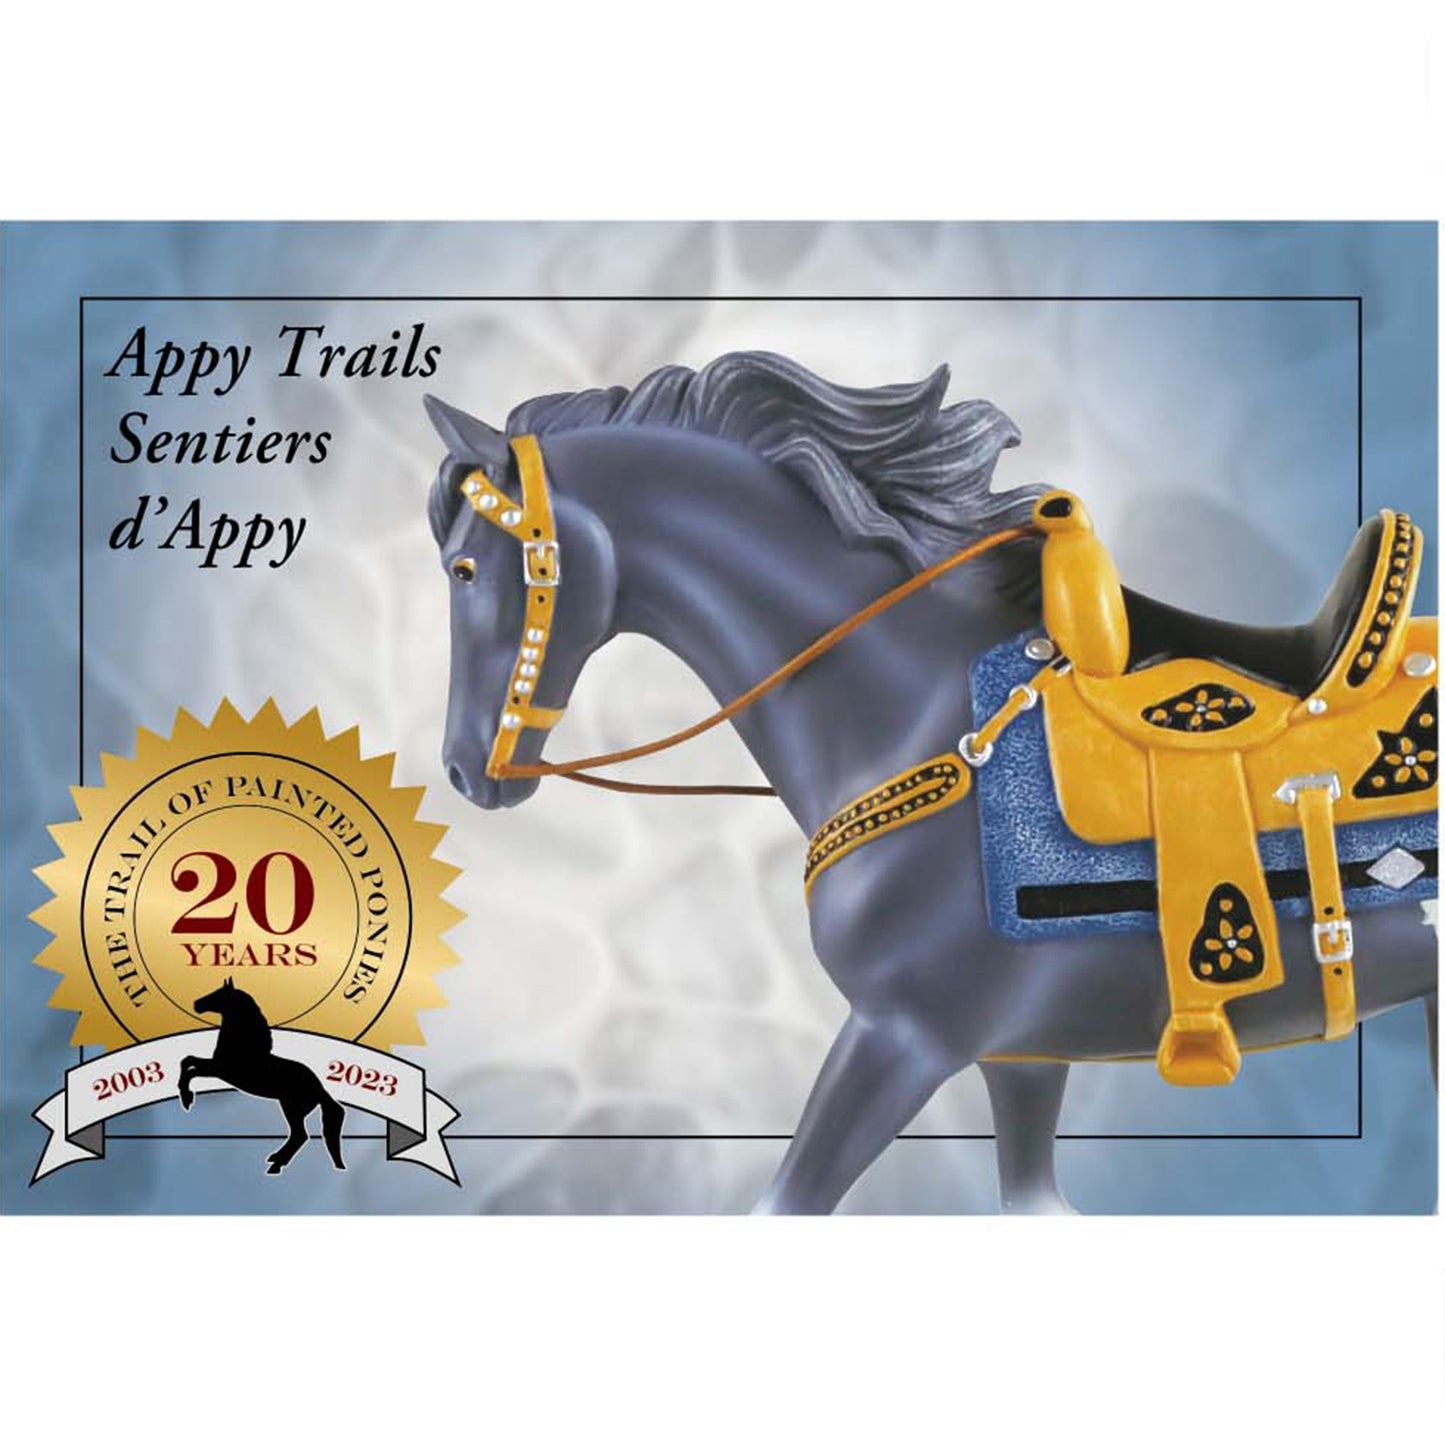 Appy Trails - Blue Ribbon Edition